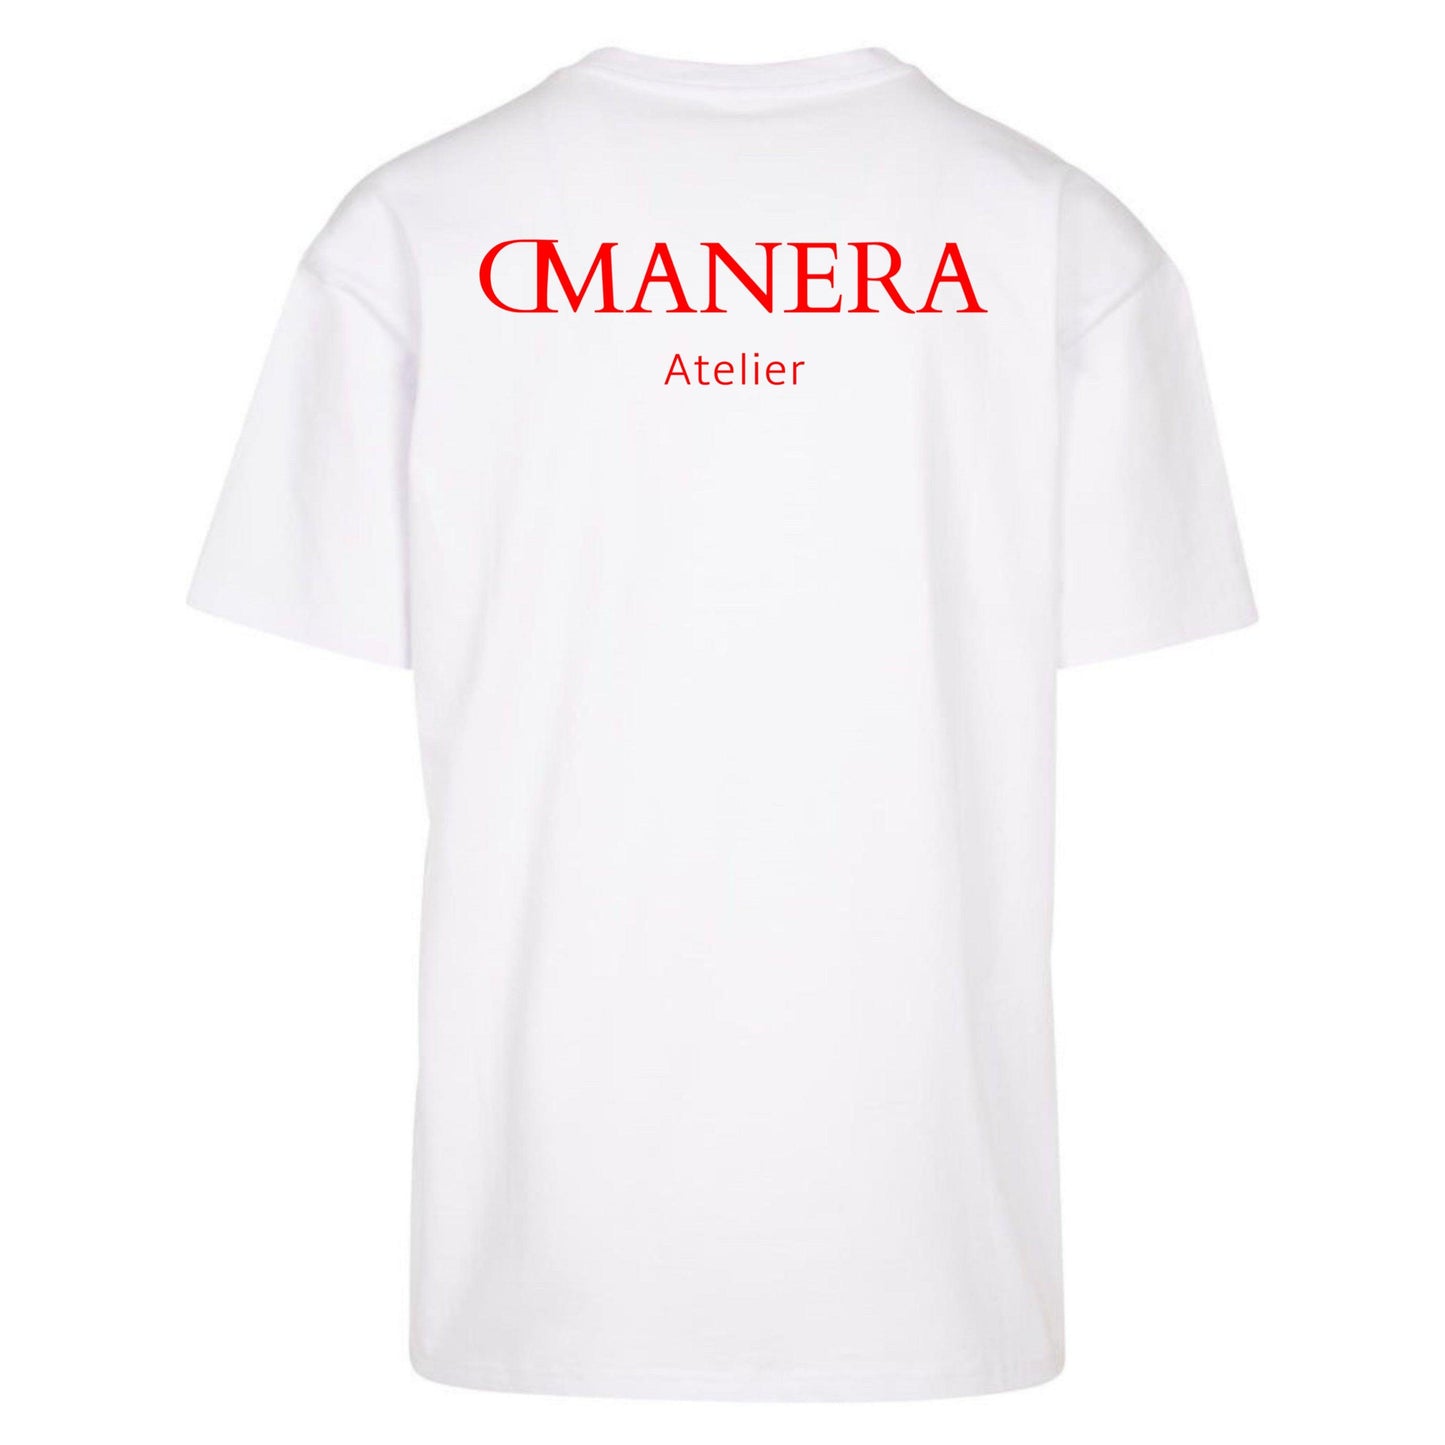 Oversize Shirt White/Red 240 g/m² - DMANERA Atelier